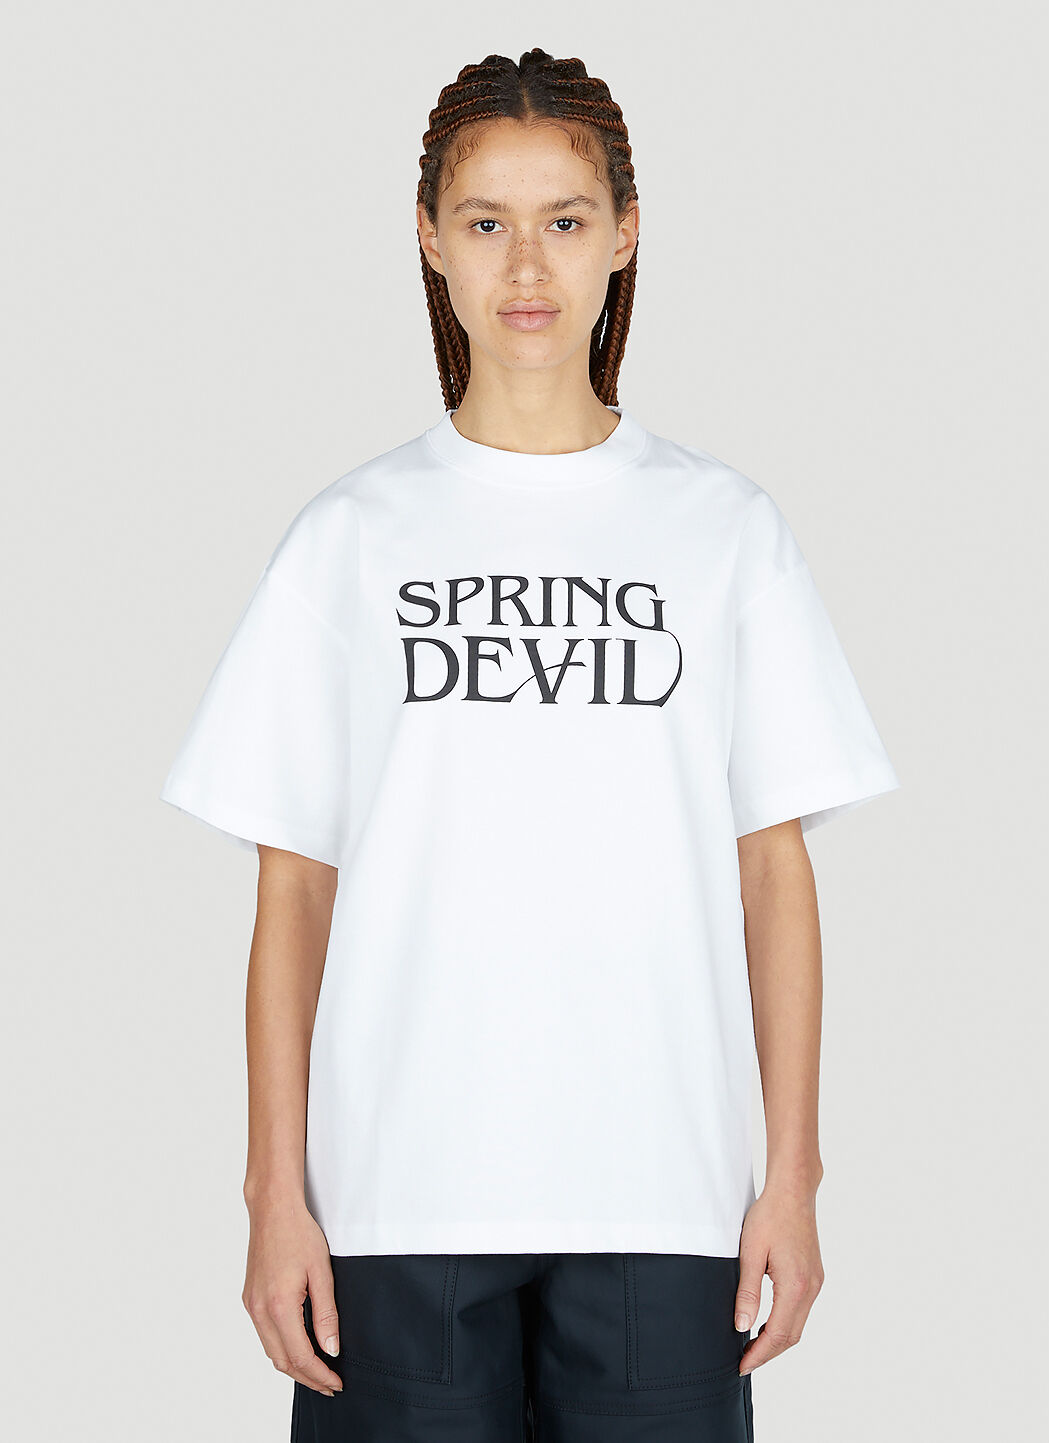 Soulland Spring Devil T-Shirt Black sld0249008